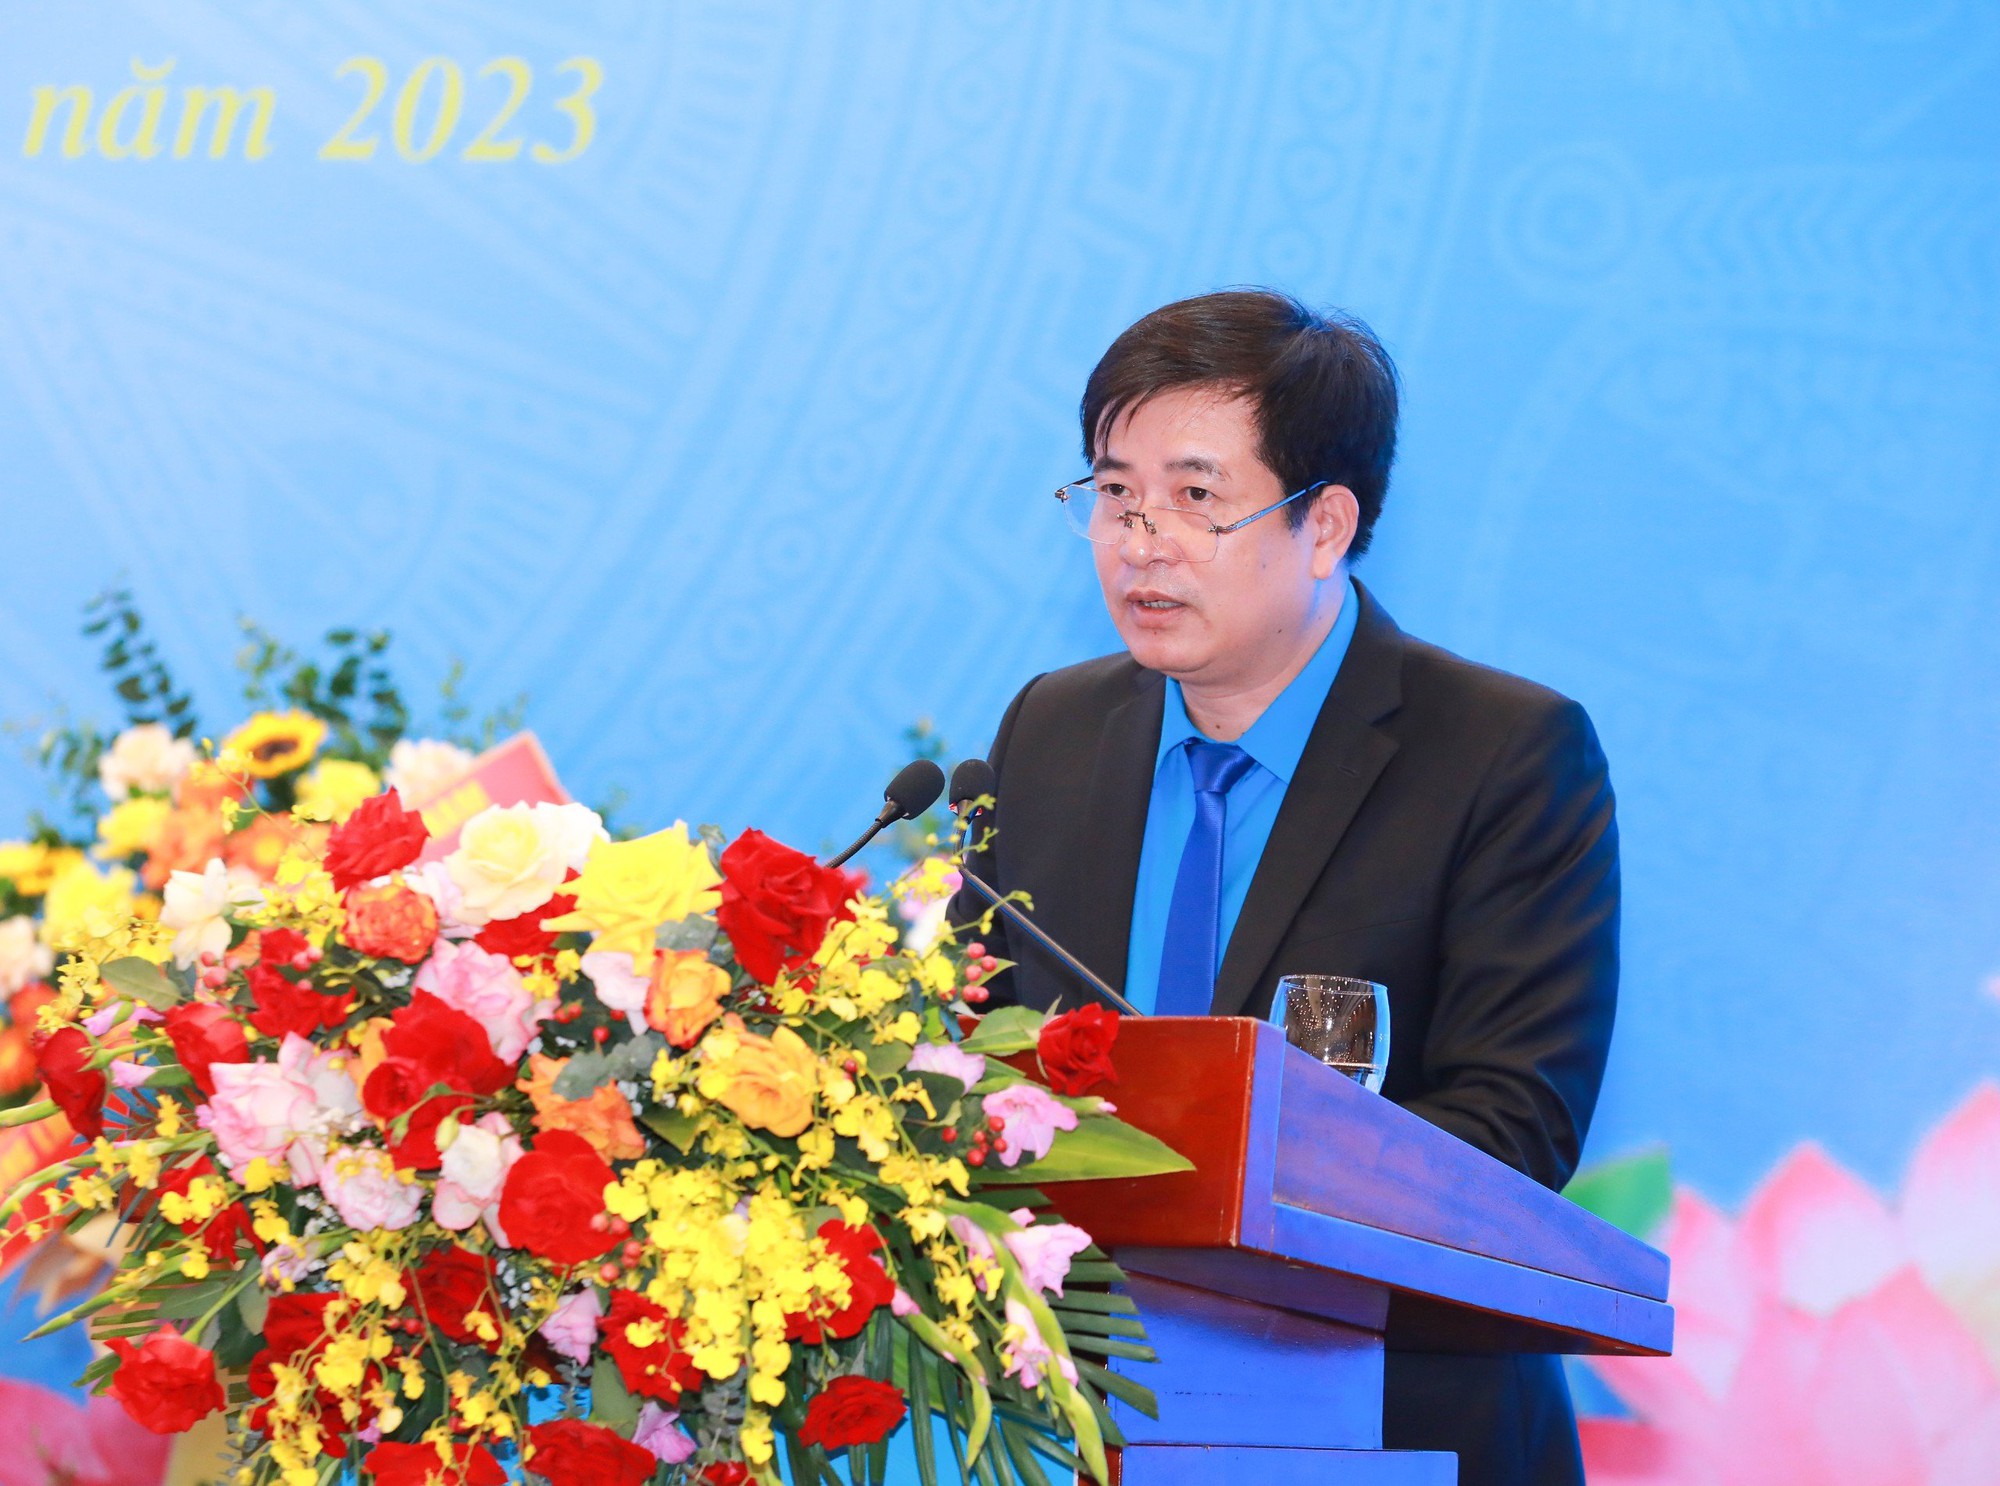 Ông Phạm Hoài Phương tái đắc cử Chủ tịch Công đoàn GTVT Việt Nam - Ảnh 1.